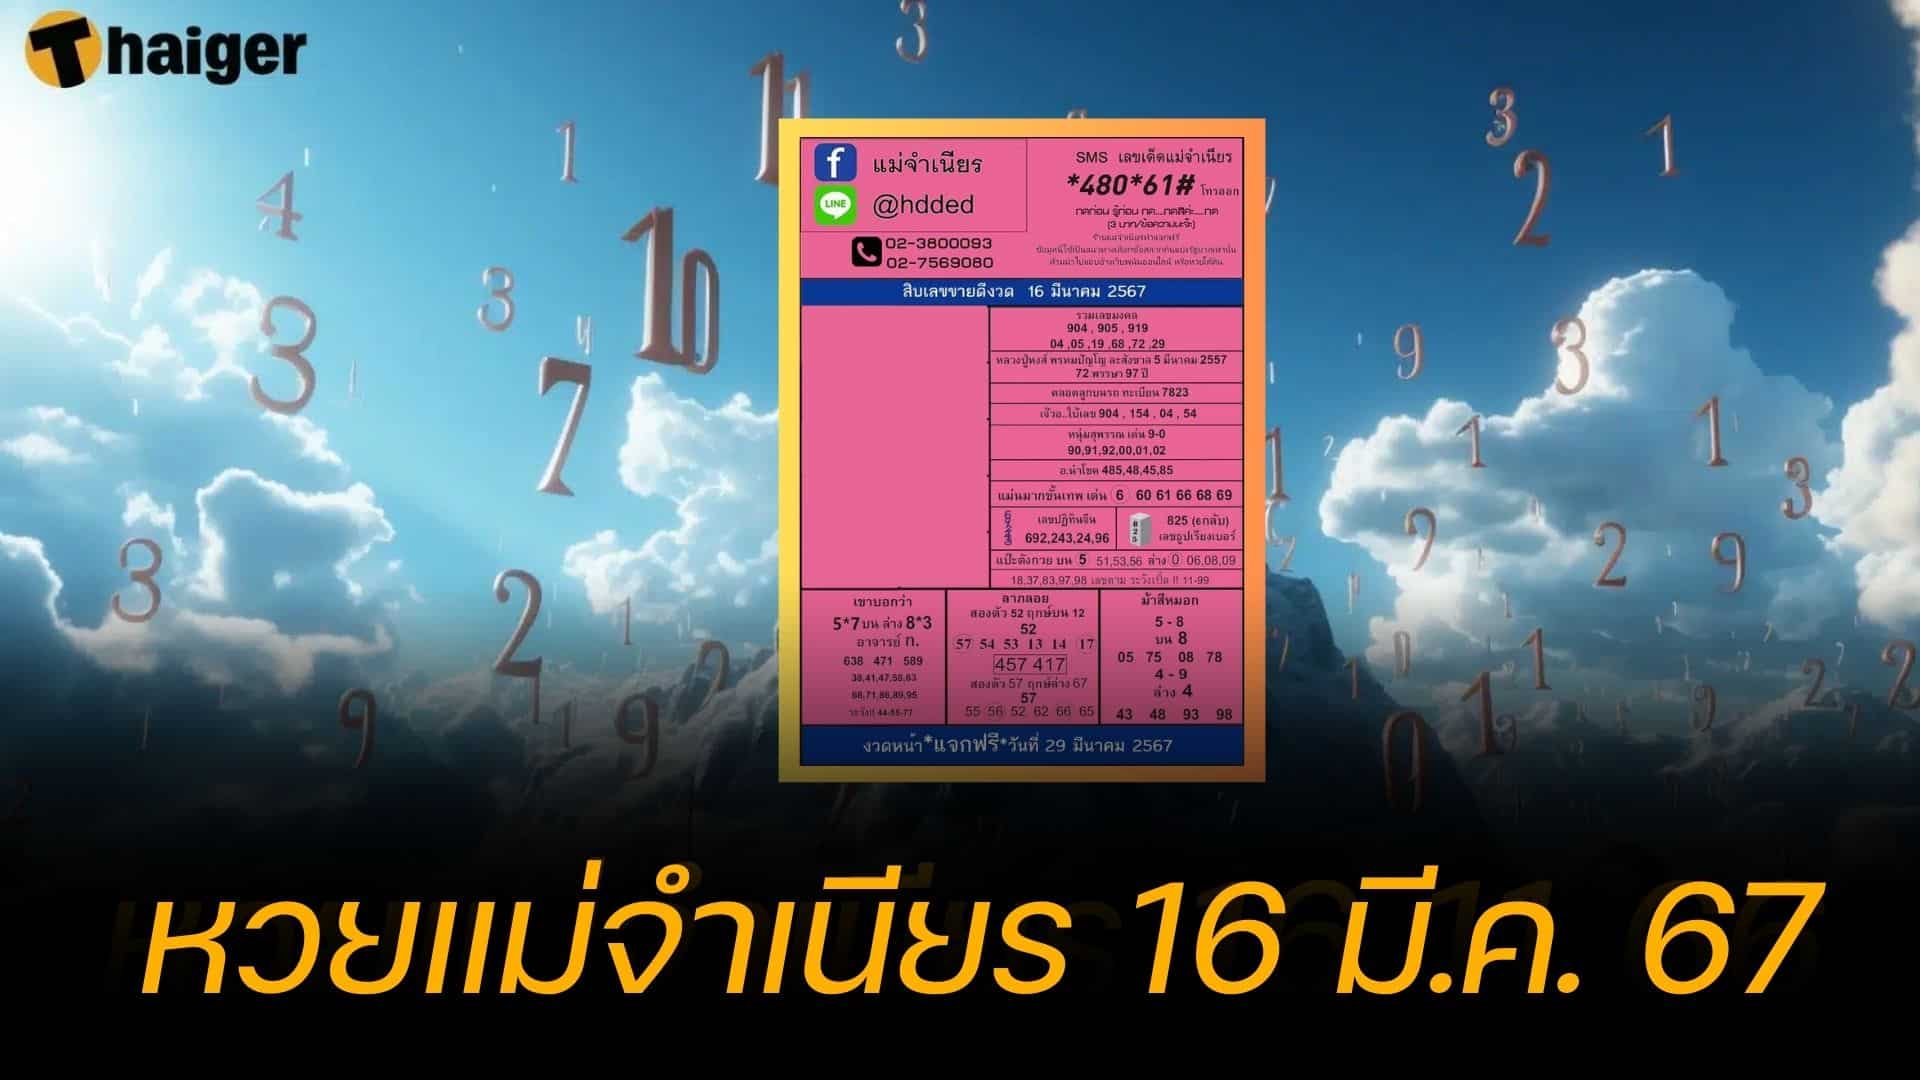 10 เลขเด็ดขายดี หวยแม่จำเนียร 16 มีนาคม 2567 งวดนี้รวยแน่ | Thaiger ข่าวไทย